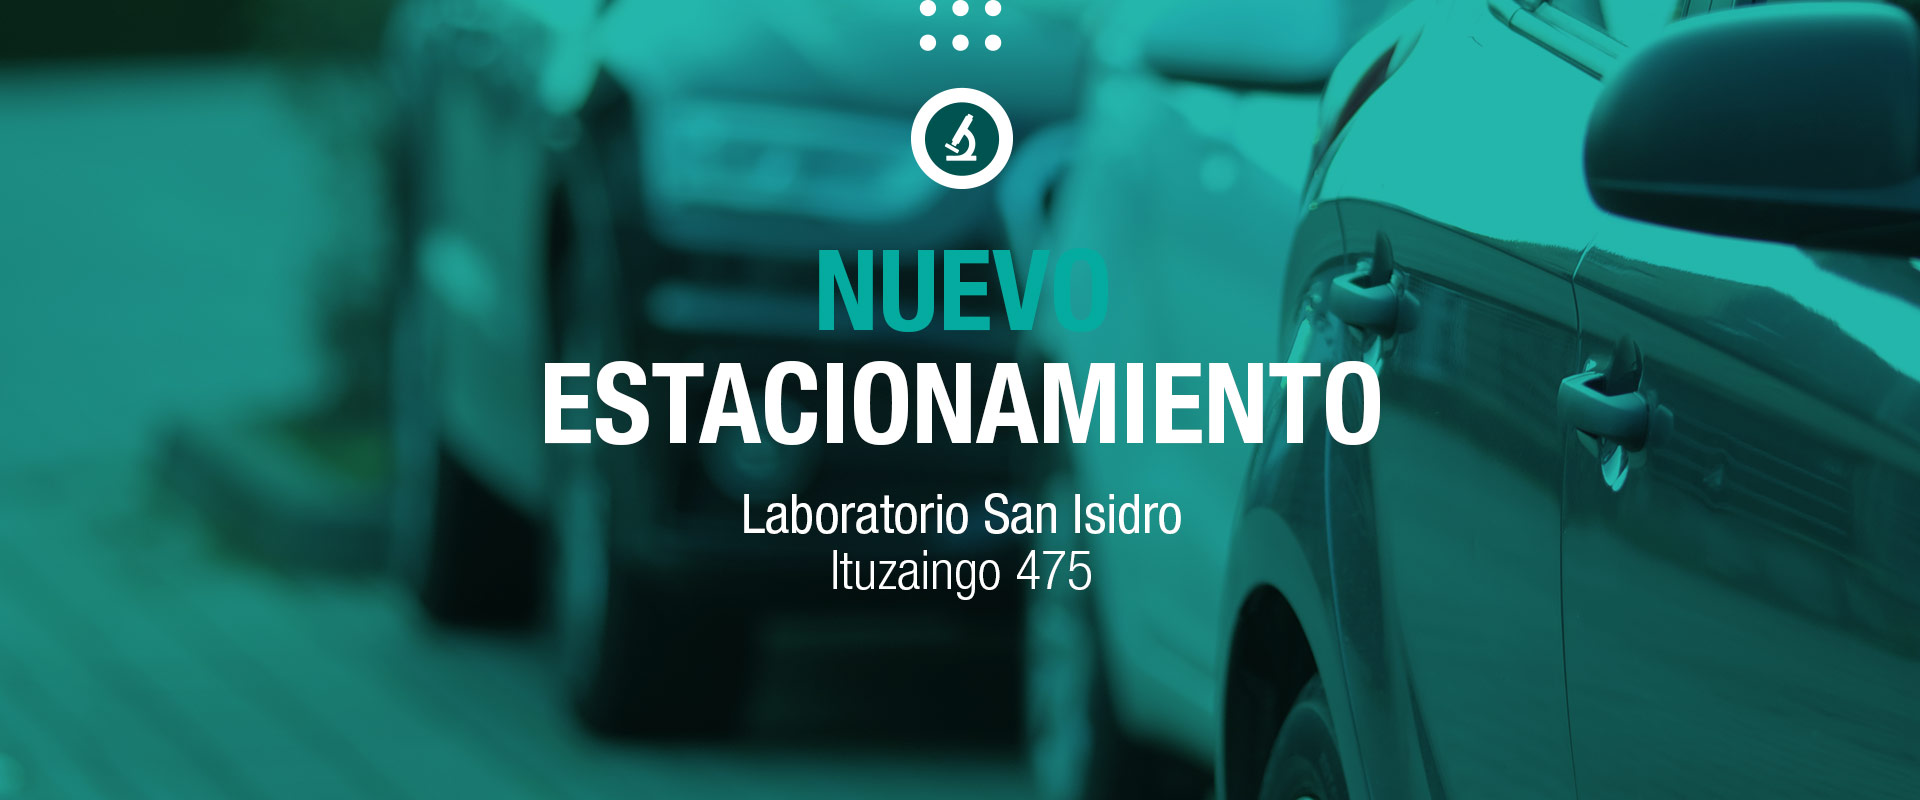 Nuevo estacionamiento - Laboratorio San Isidro